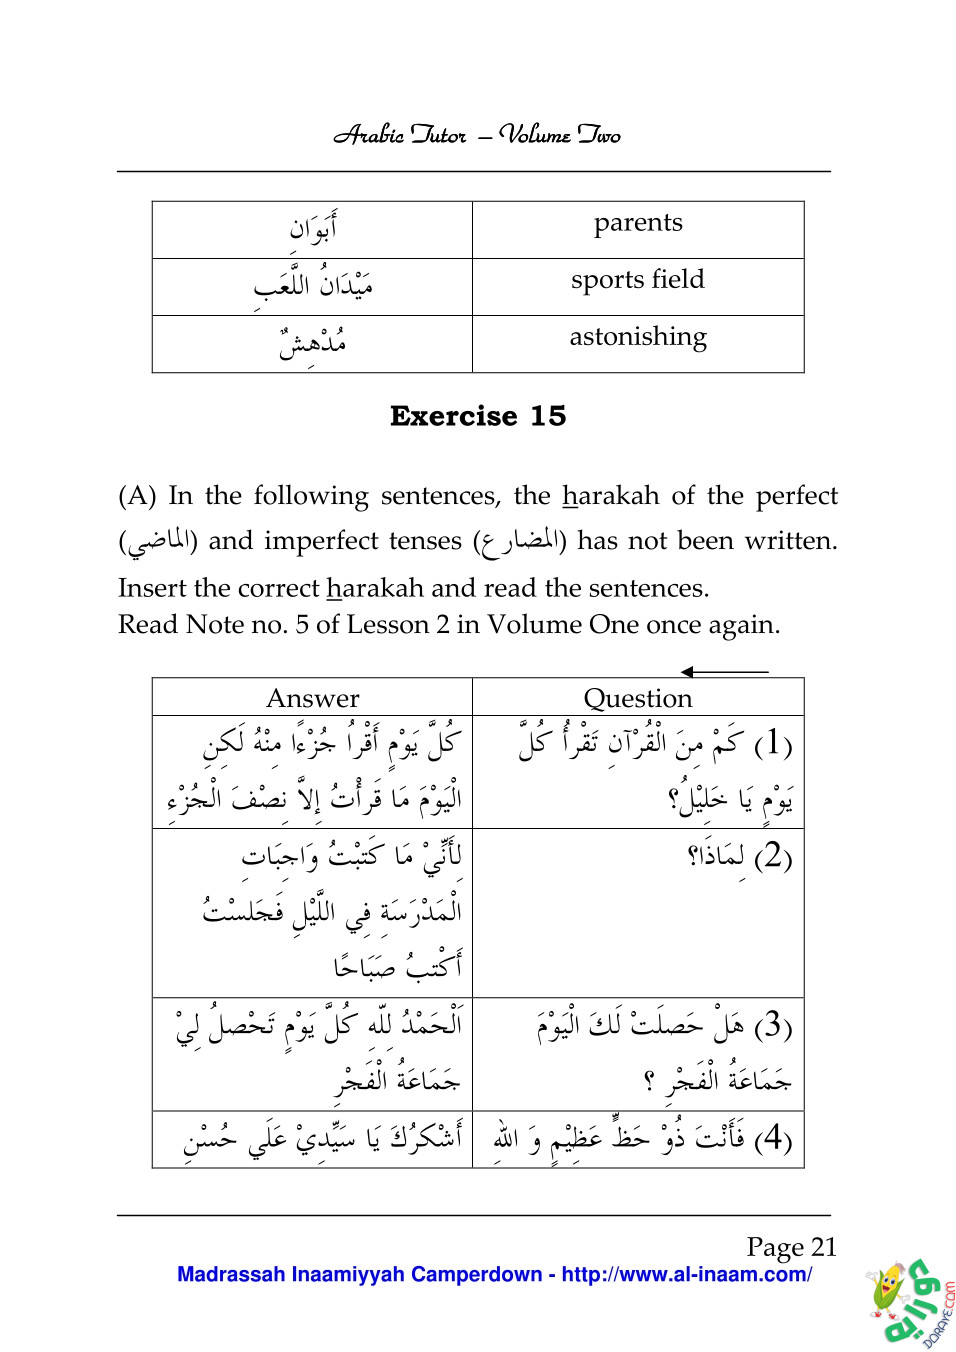 Arabic Tutor Volume Two 021 - Arabic Tutor Volume-Two 2